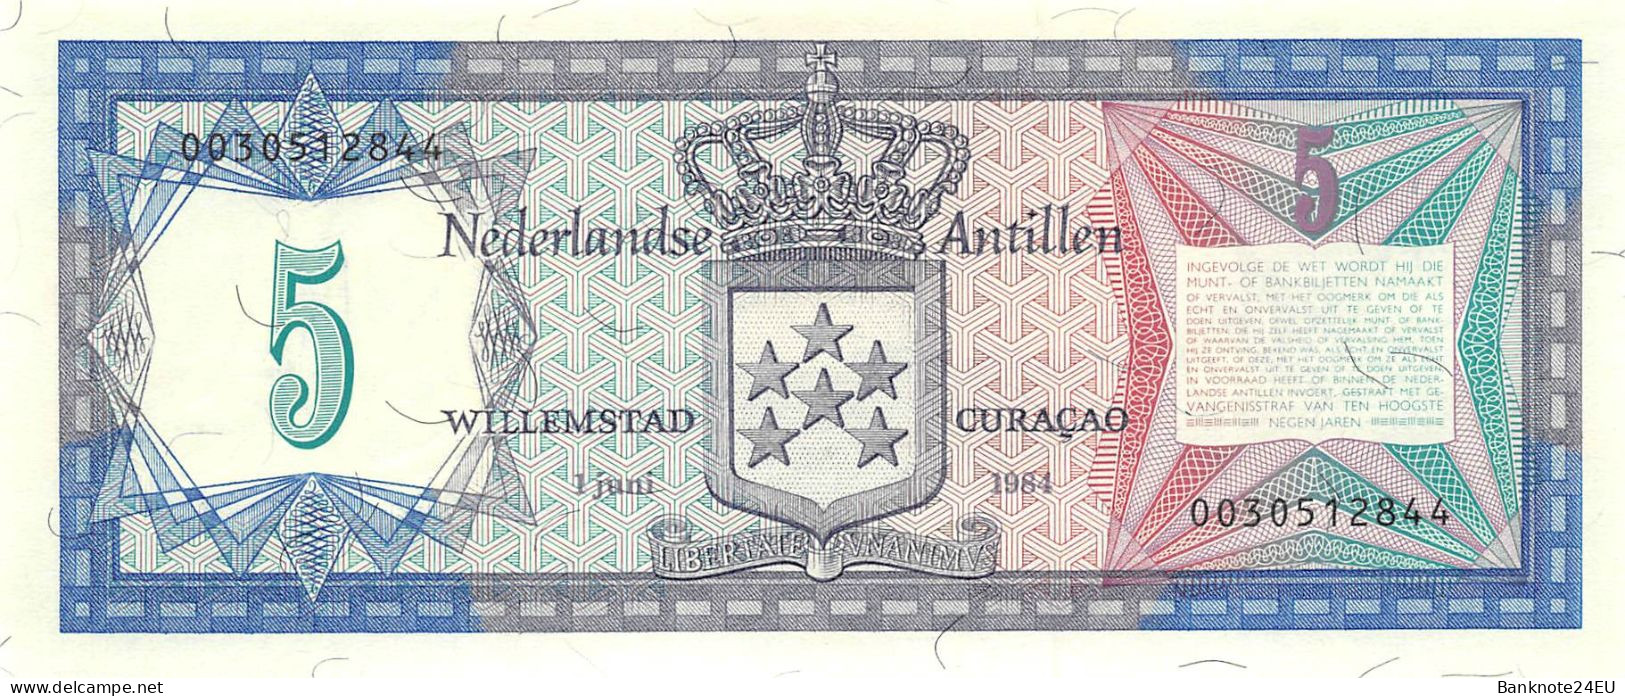 Netherlands Antilles 5 Gulden 1984 Unc Pn 15b - Netherlands Antilles (...-1986)